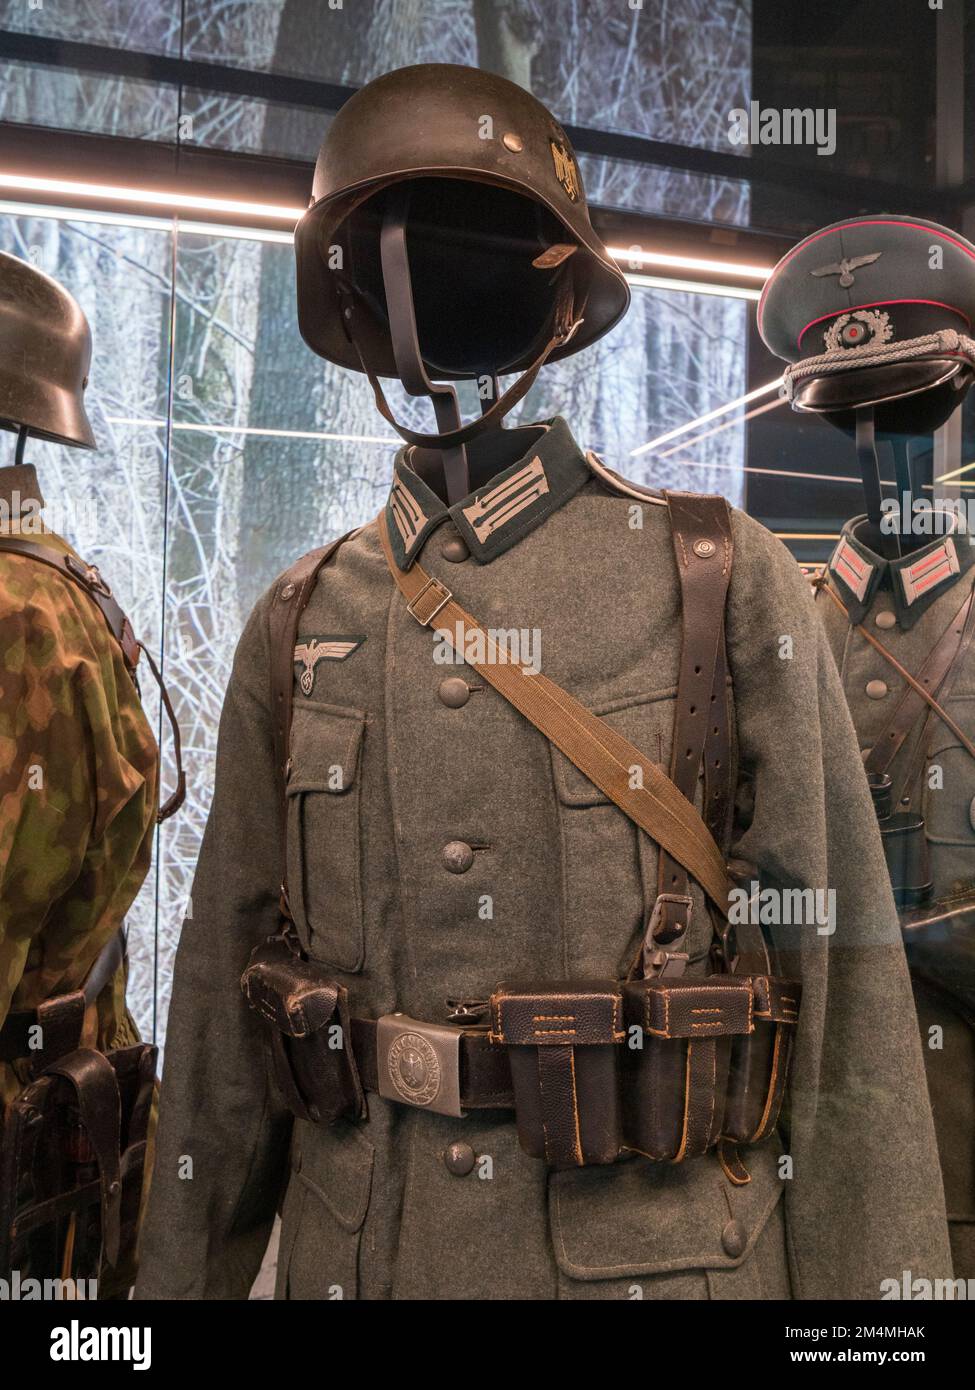 Uniform und Helm einer deutschen Infanterie aus dem Zweiten Weltkrieg, Imperial war Museum, London, Großbritannien. Stockfoto